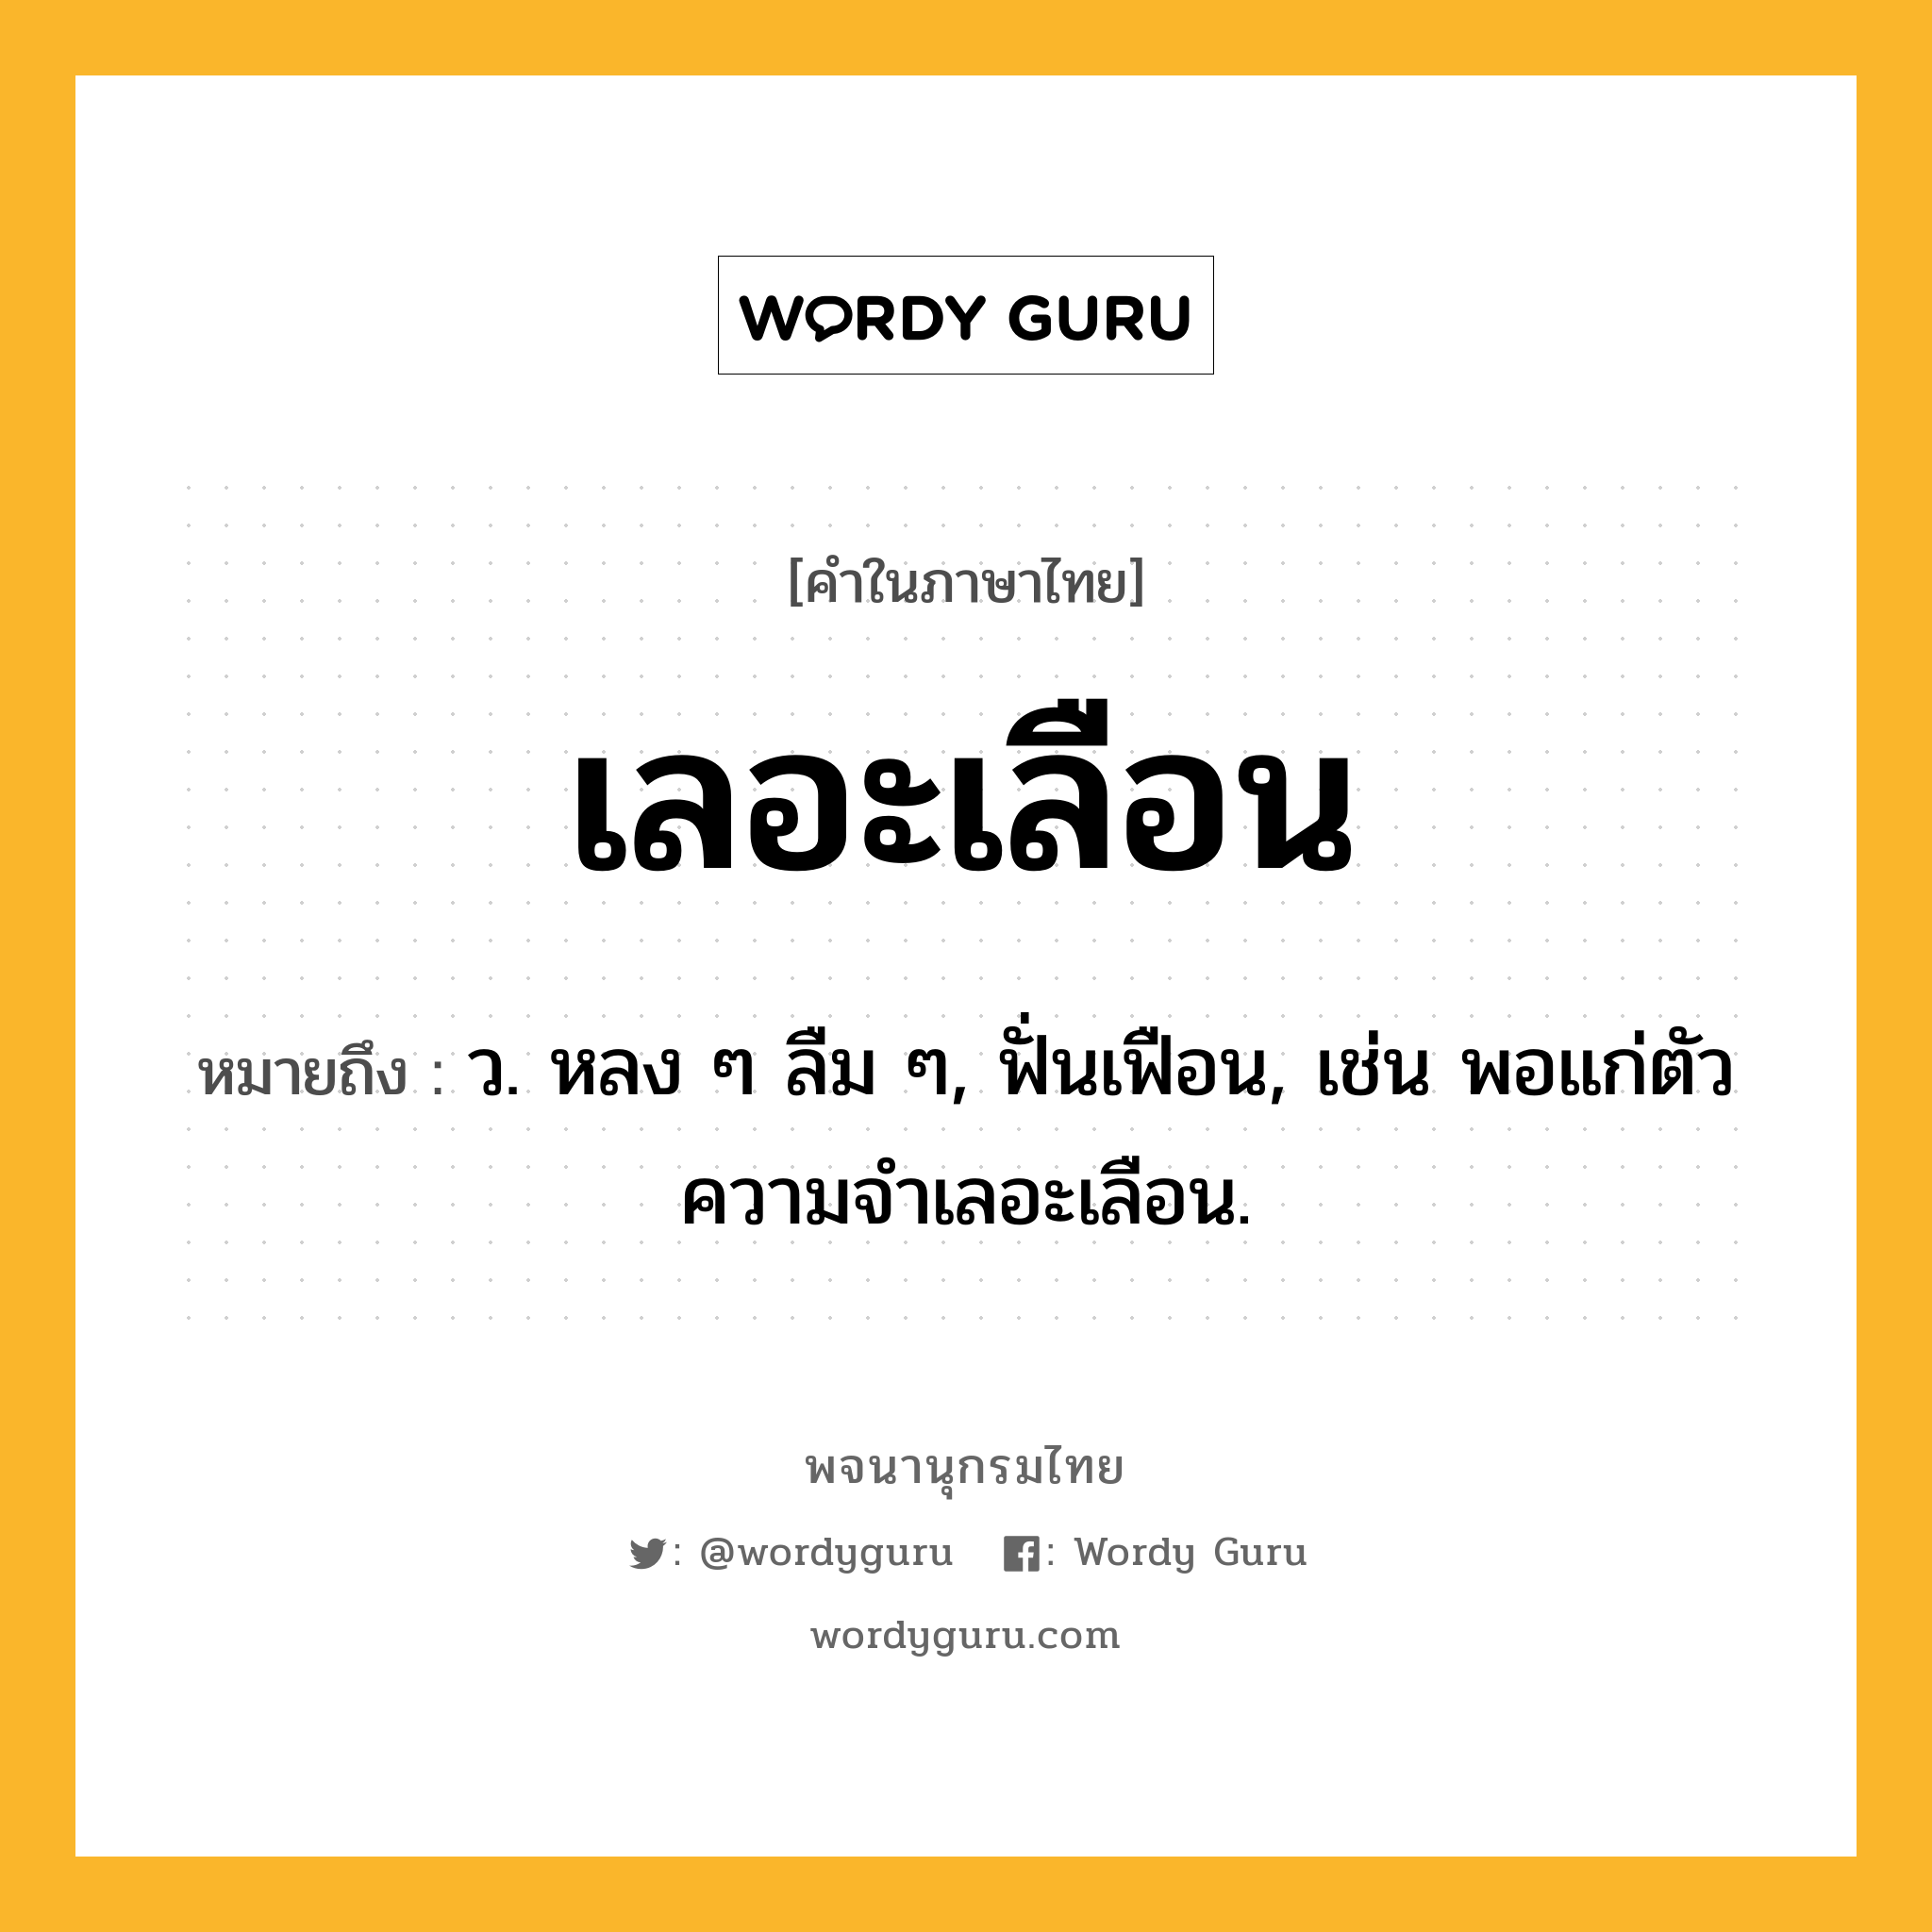 เลอะเลือน ความหมาย หมายถึงอะไร?, คำในภาษาไทย เลอะเลือน หมายถึง ว. หลง ๆ ลืม ๆ, ฟั่นเฟือน, เช่น พอแก่ตัว ความจำเลอะเลือน.